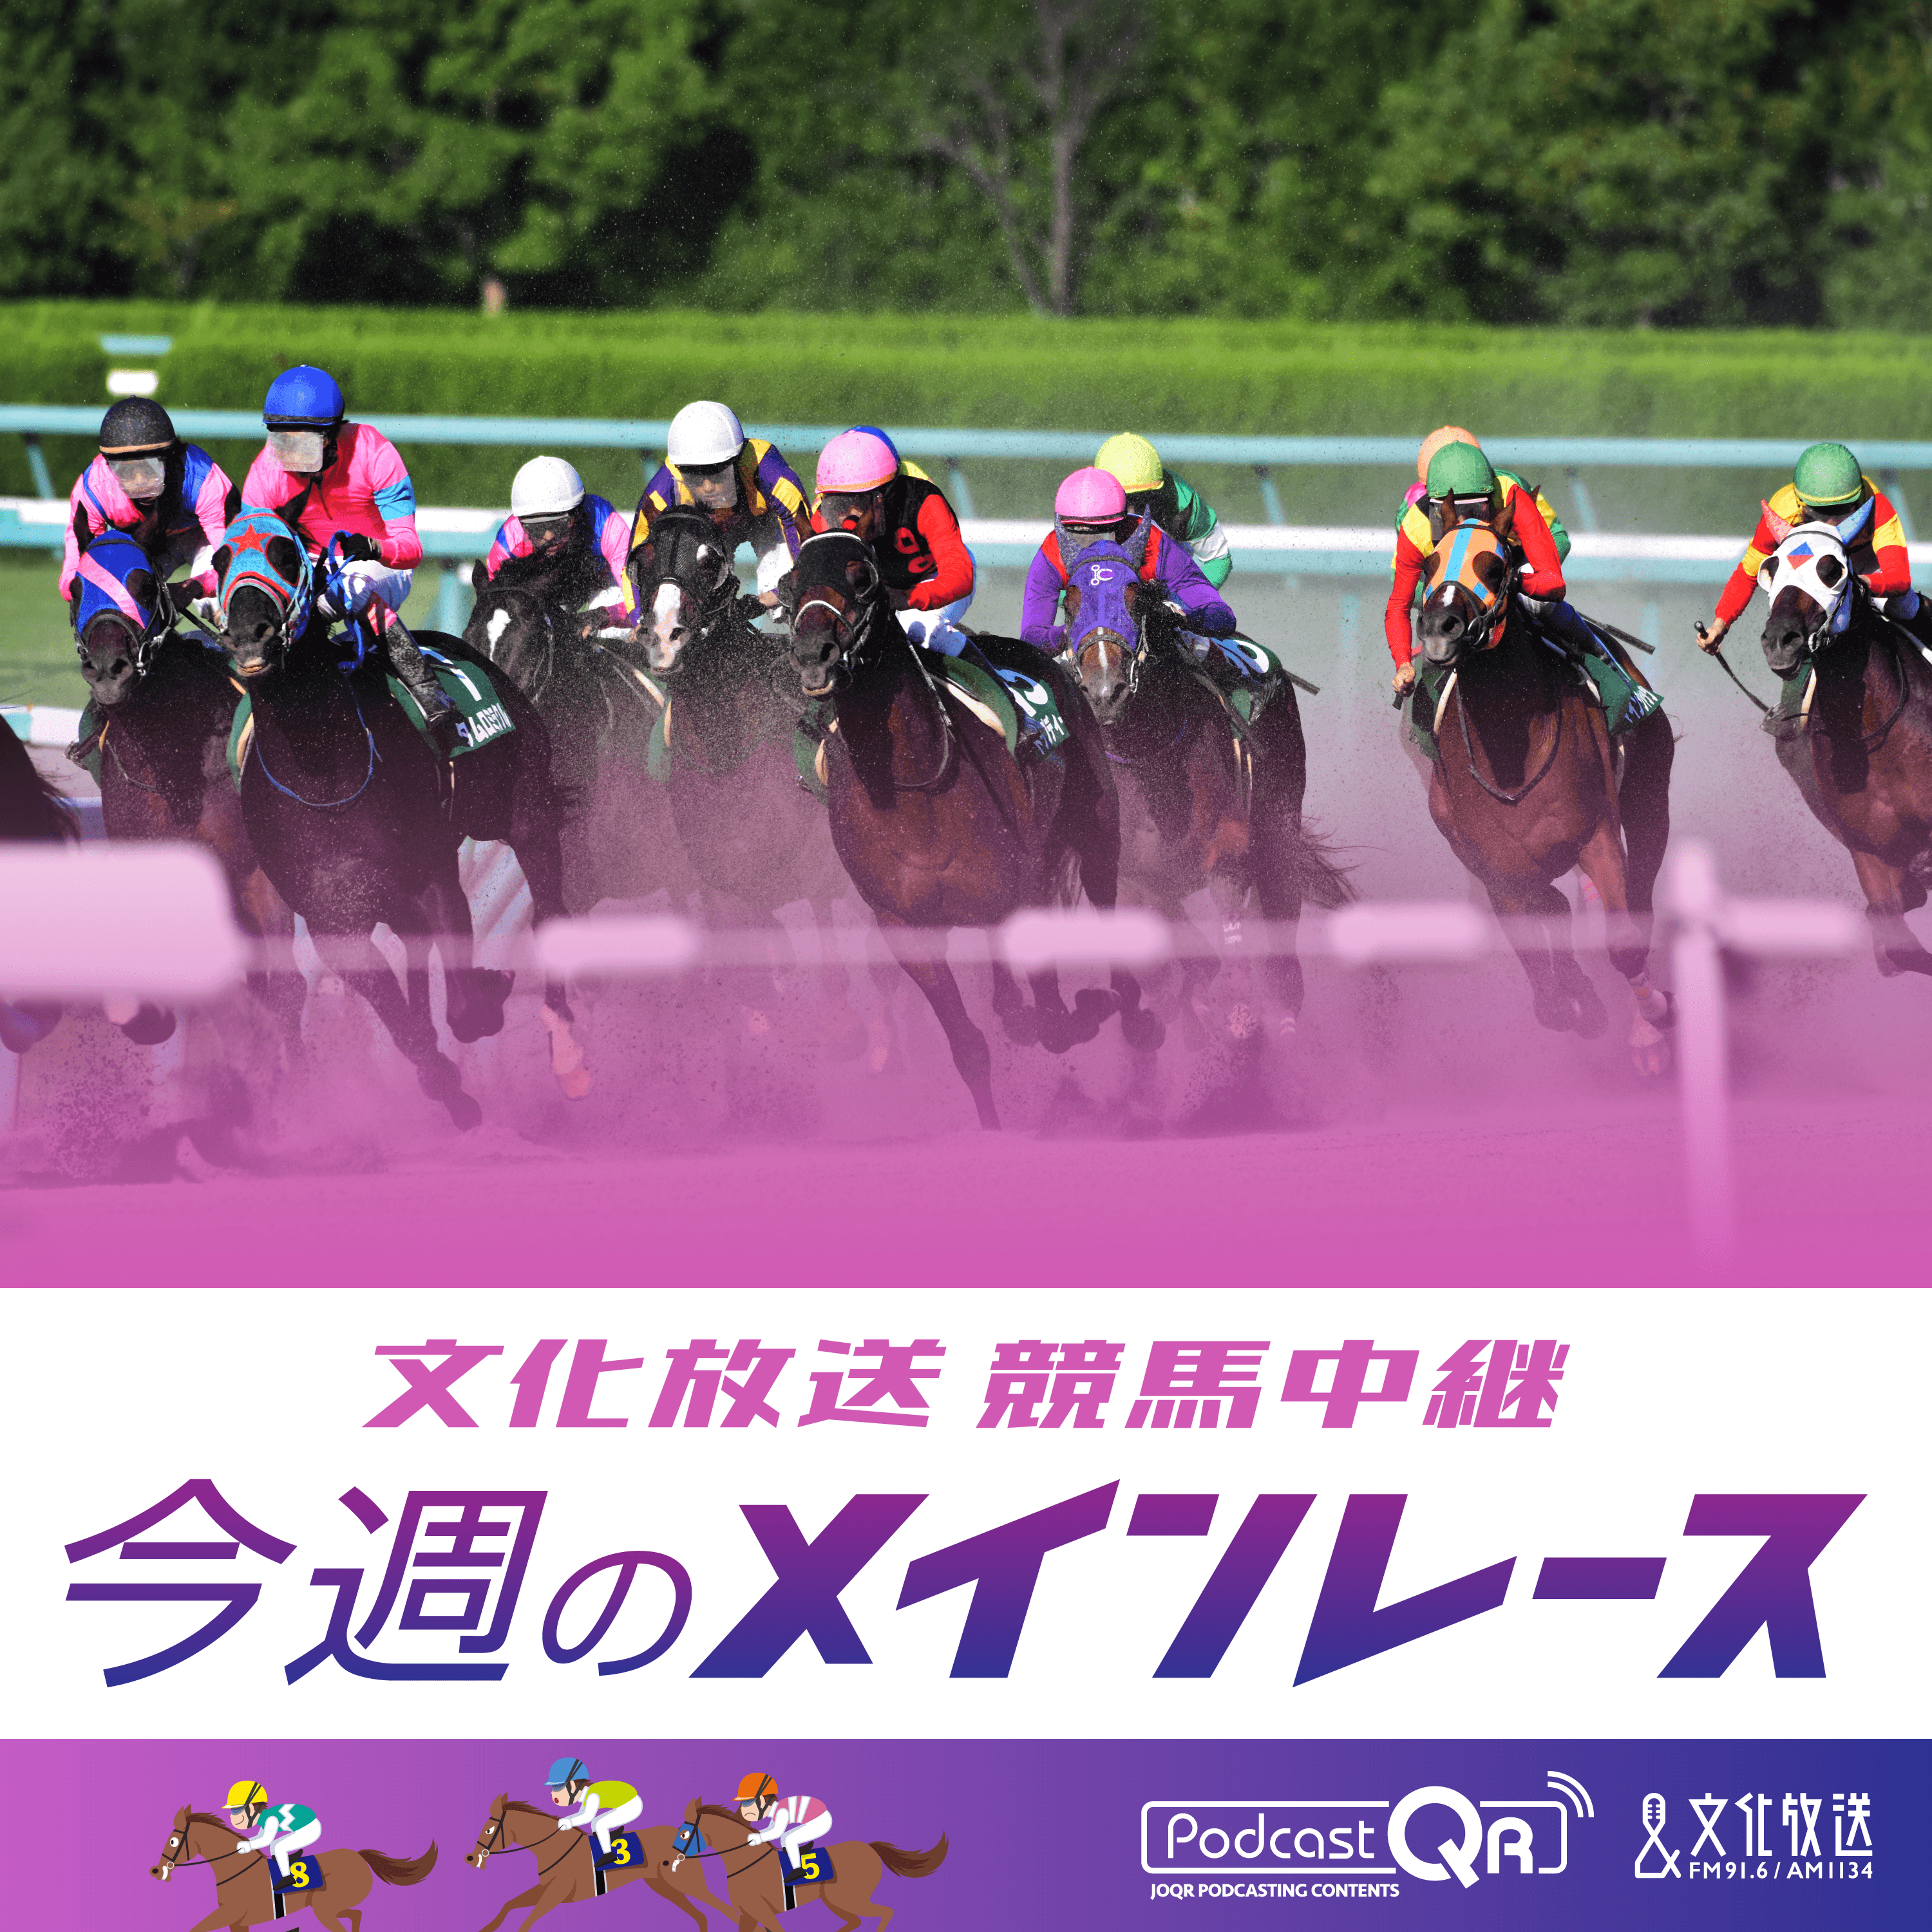 ジャパン・オータムインターナショナル 第39回 マイルチャンピオンシップ（GⅠ）